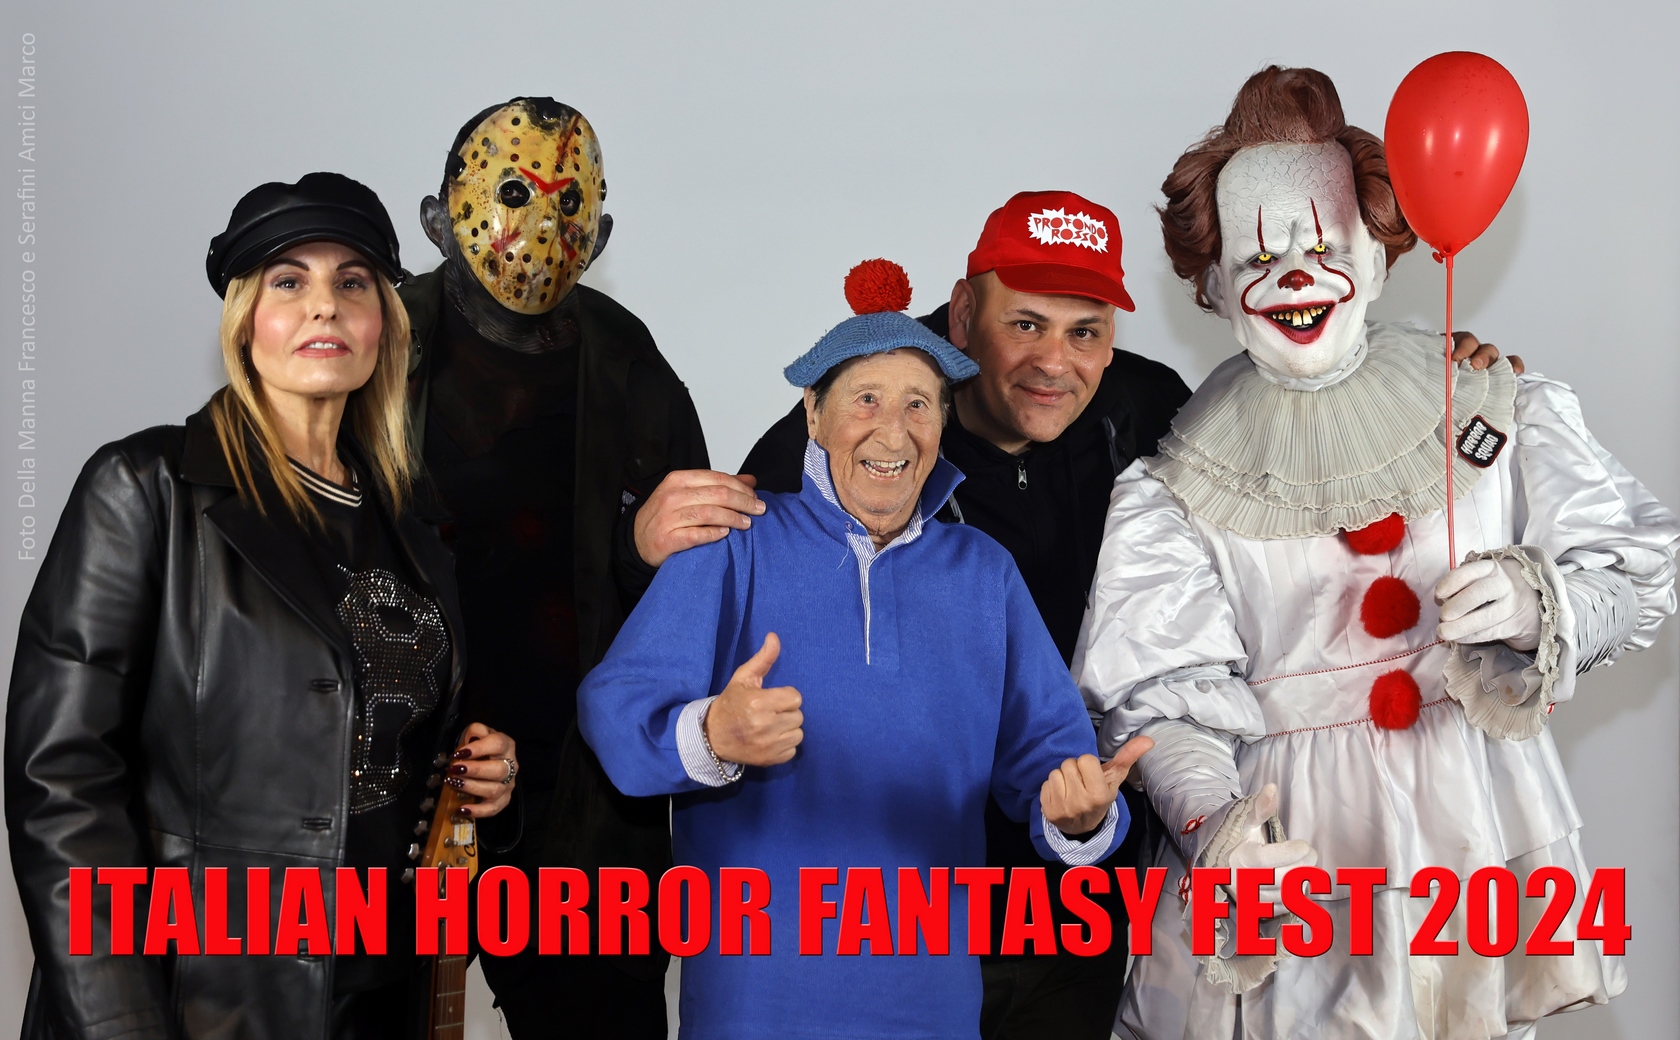 Pierino contro i mostri! Anche Alvaro Vitali  all’Italian Horror Fantasy Fest 2024